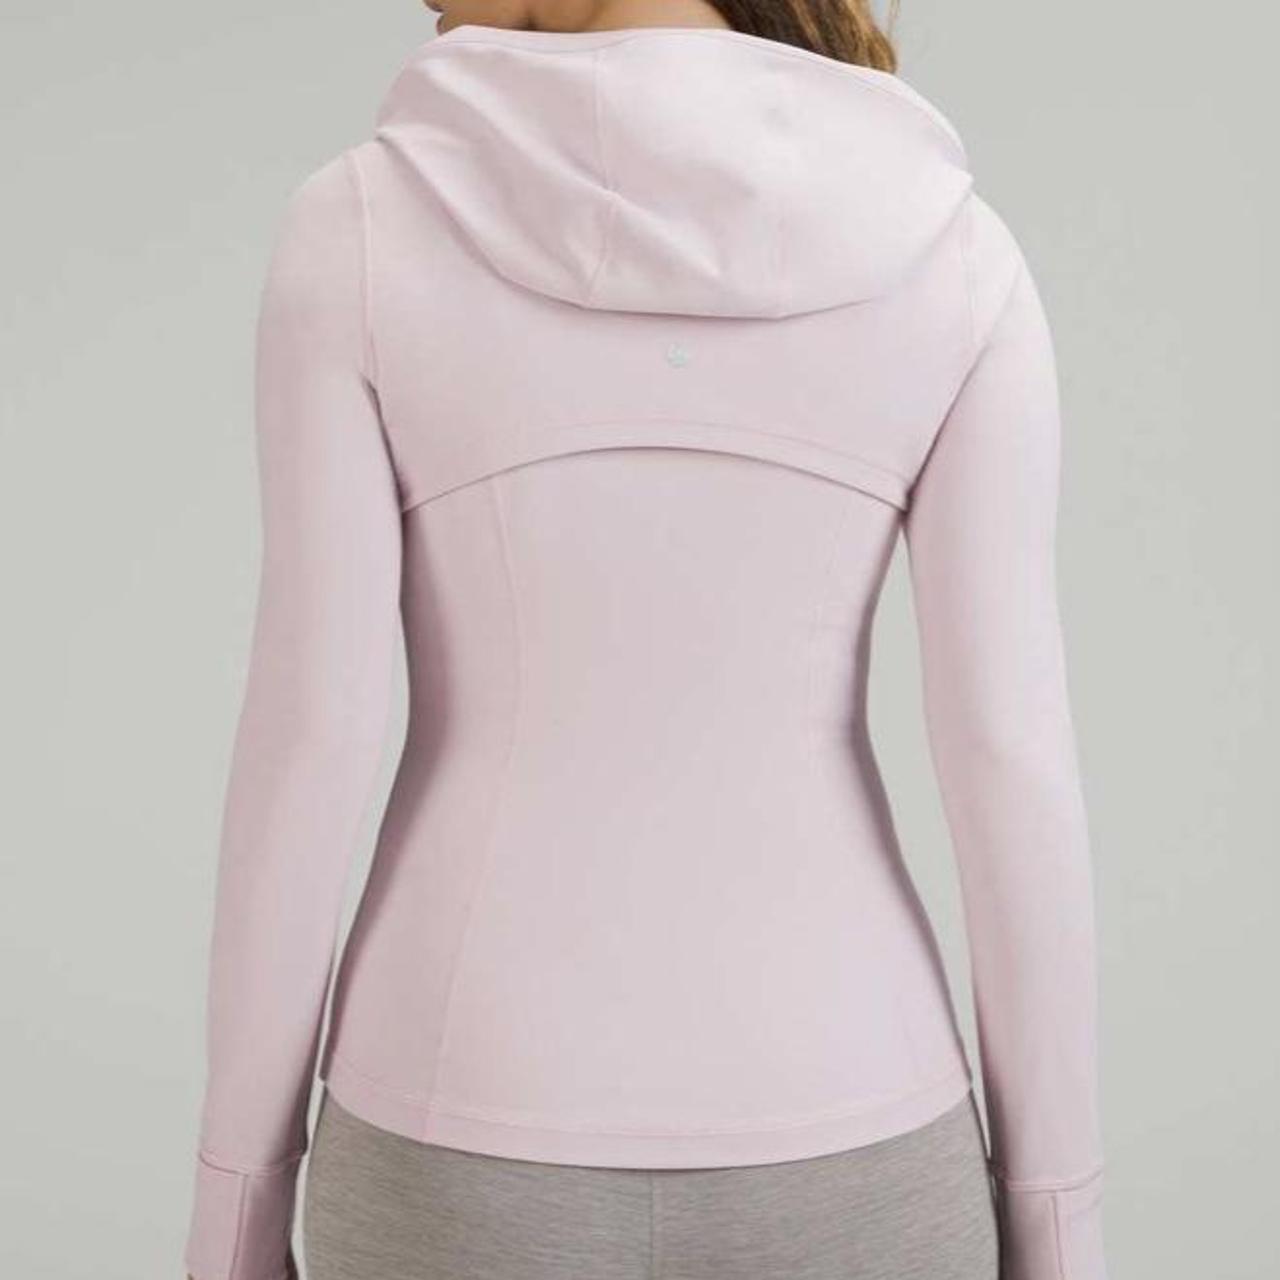 lululemon pink peony hooded define jacket💗 perfect - Depop